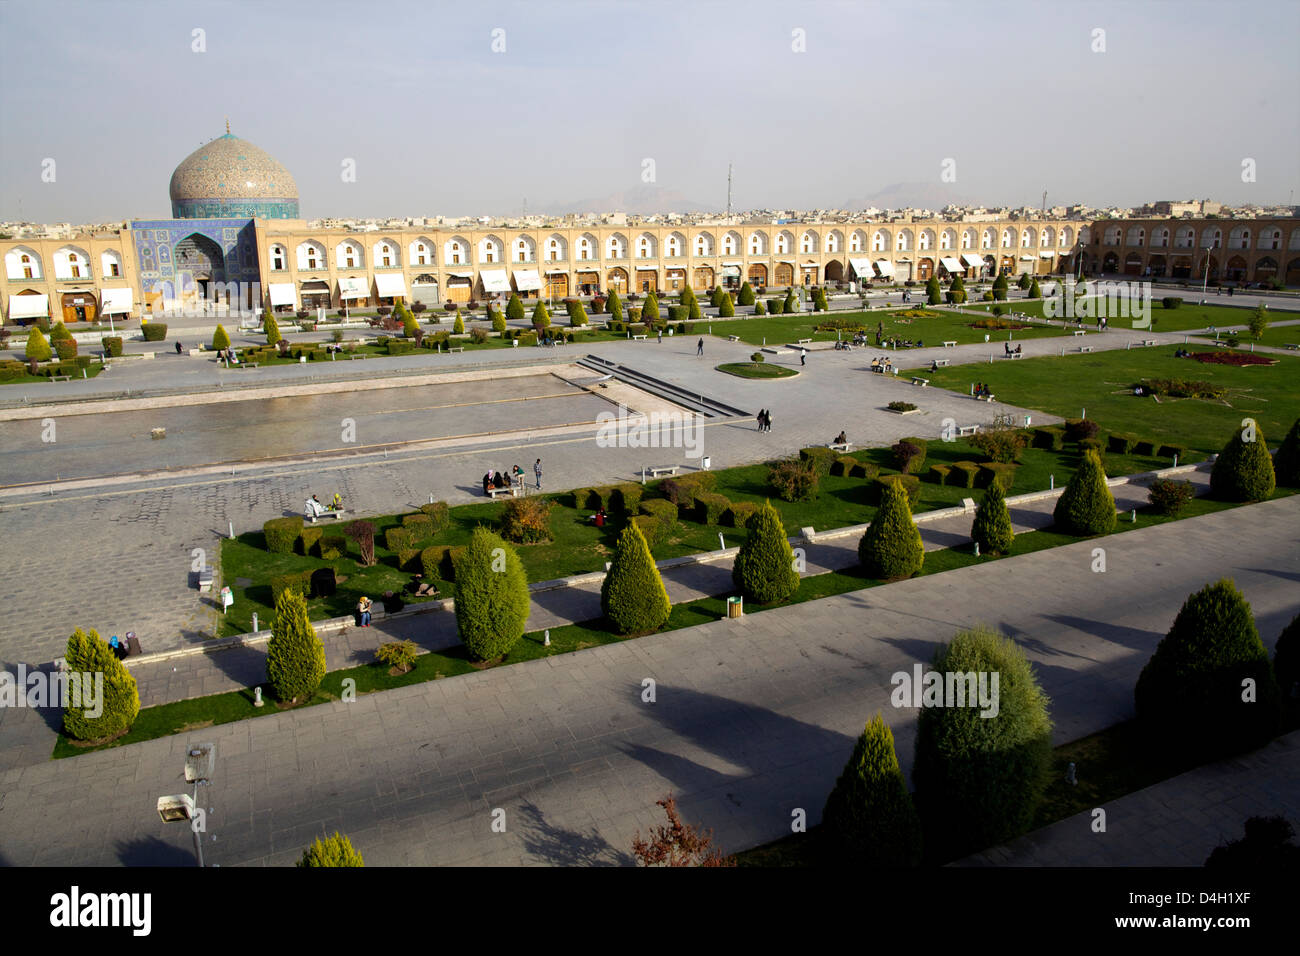 Vue sur la Place Royale, Site du patrimoine mondial de l'UNESCO, et le cheikh de La mosquée Lotf Allah d'Isfahan, Iran, Moyen-Orient Banque D'Images